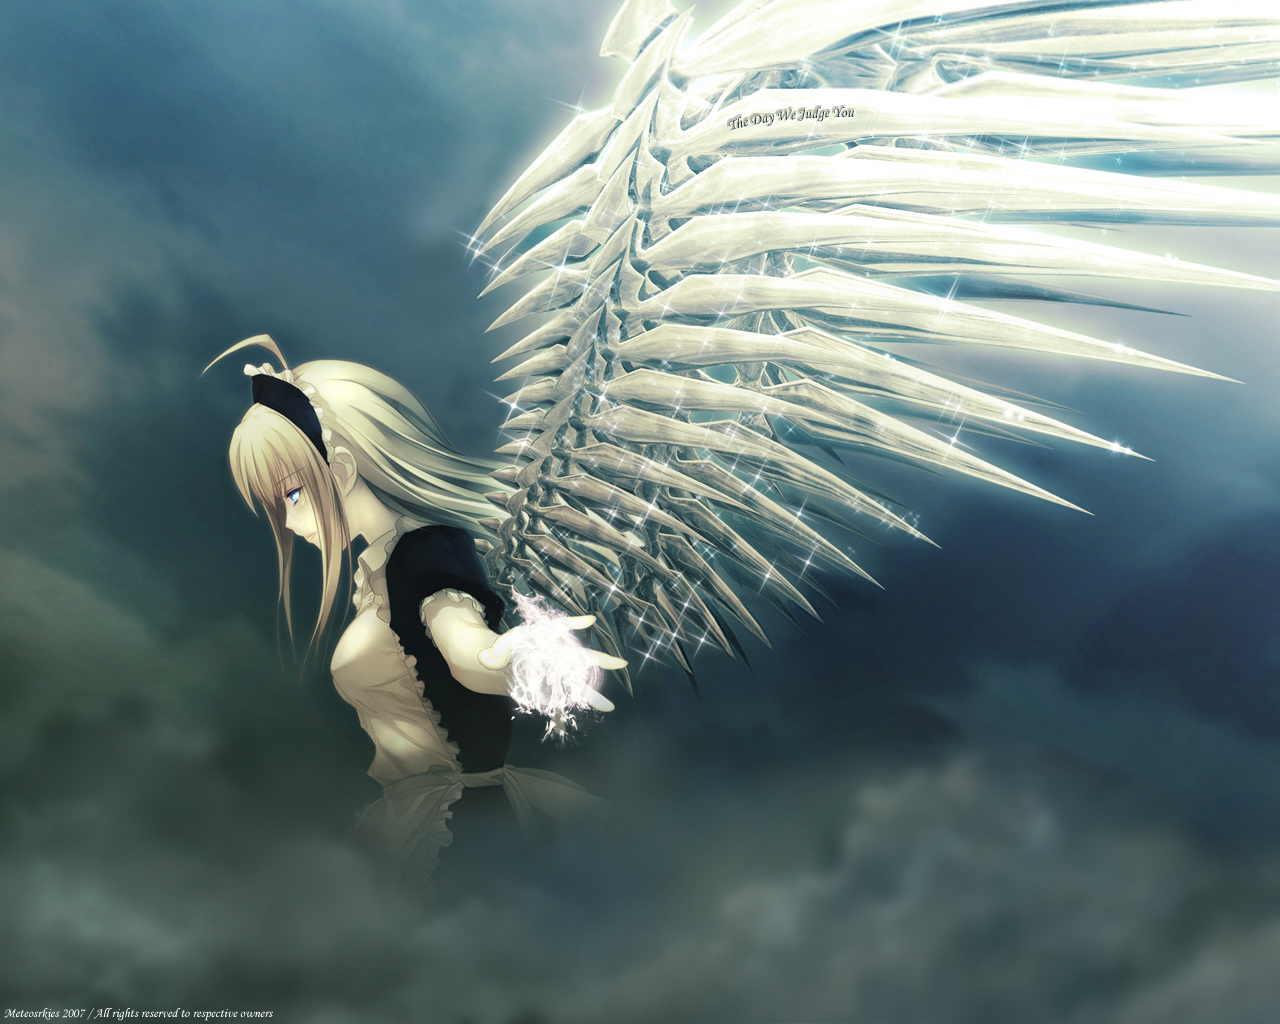 3d обои Девушка ангел с хрустальными крыльями в темных небесах (Metcosrkies 2007  / All right reserved to respective owners)  ангелы # 19358